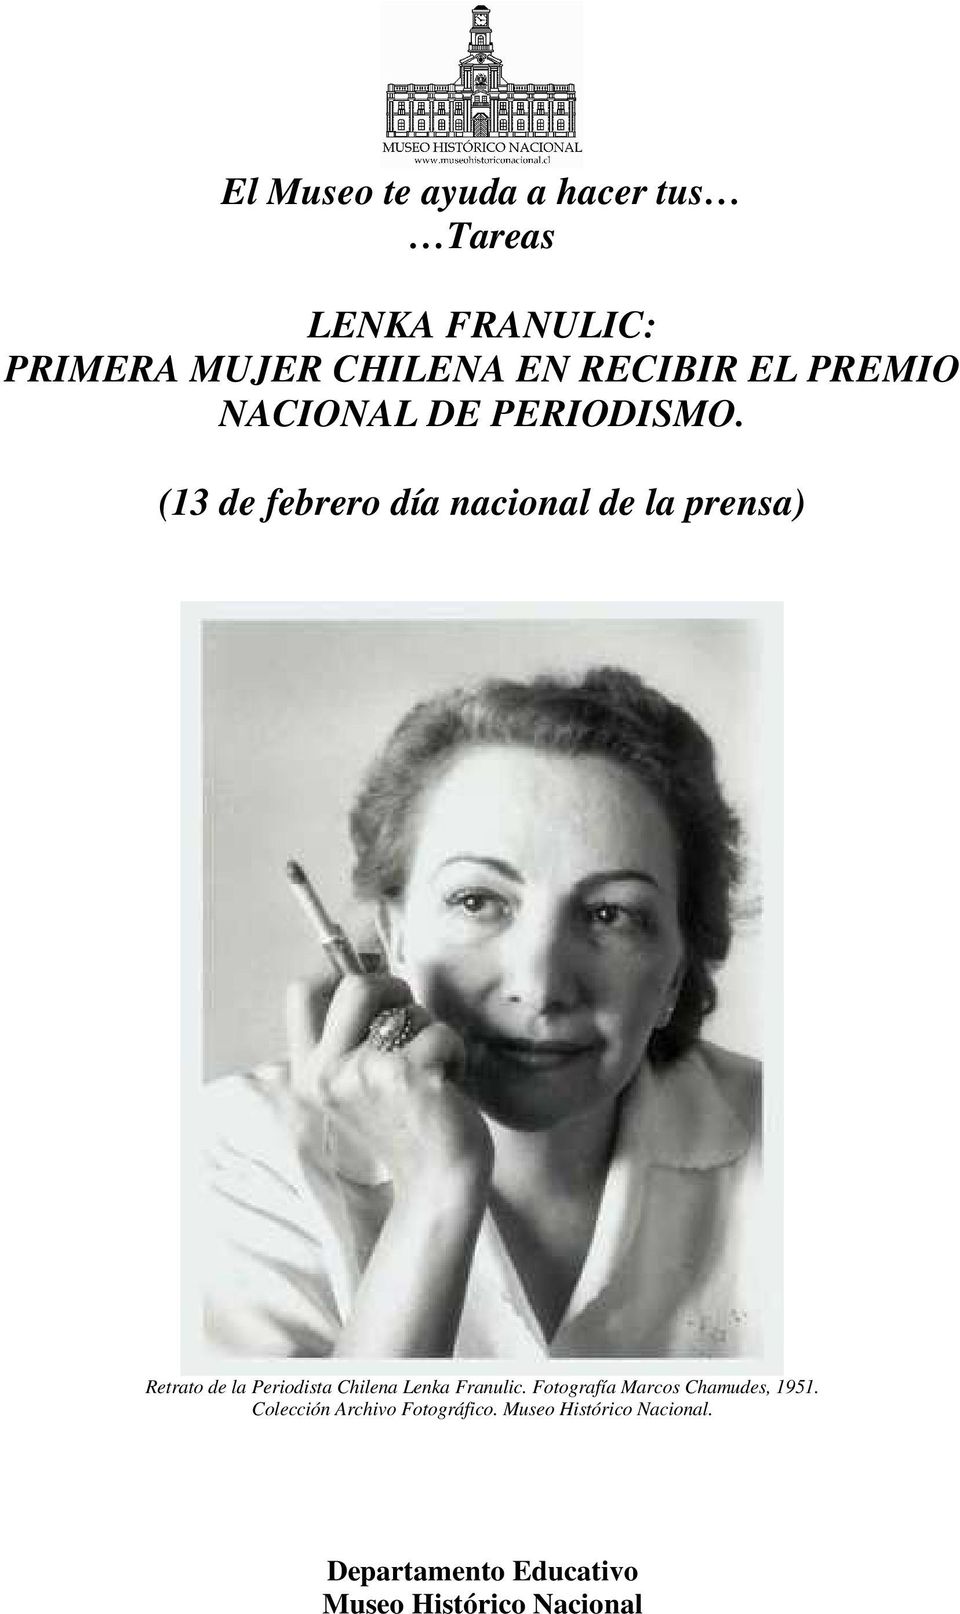 (13 de febrero día nacional de la prensa) Retrato de la Periodista Chilena Lenka